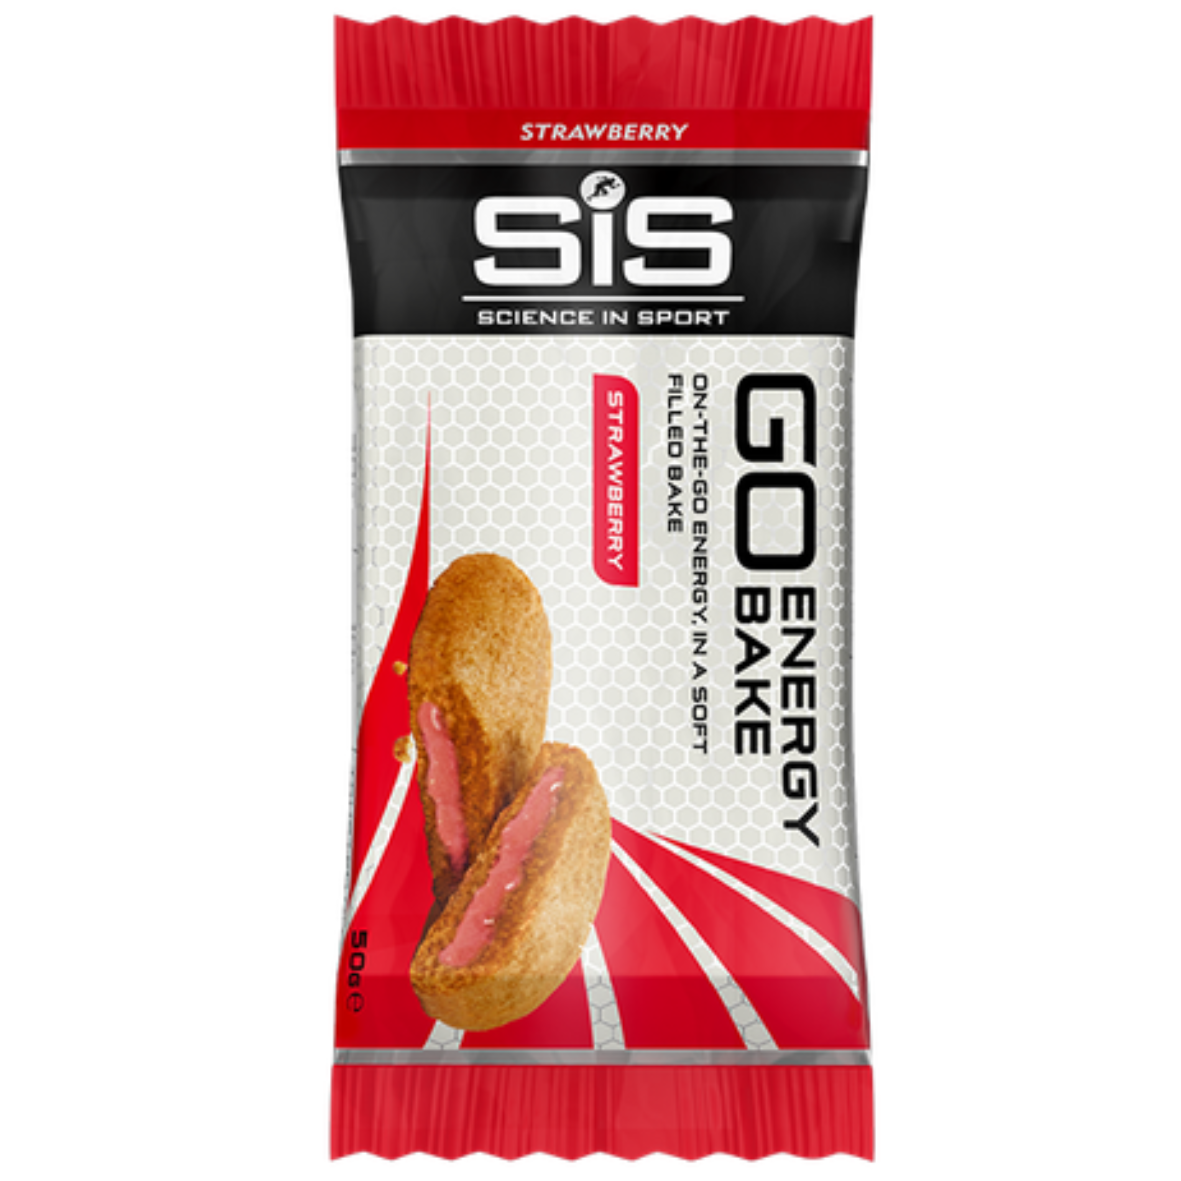 Science In Sport (SIS) - Go Energy Bake Bars - Strawberry (50g)